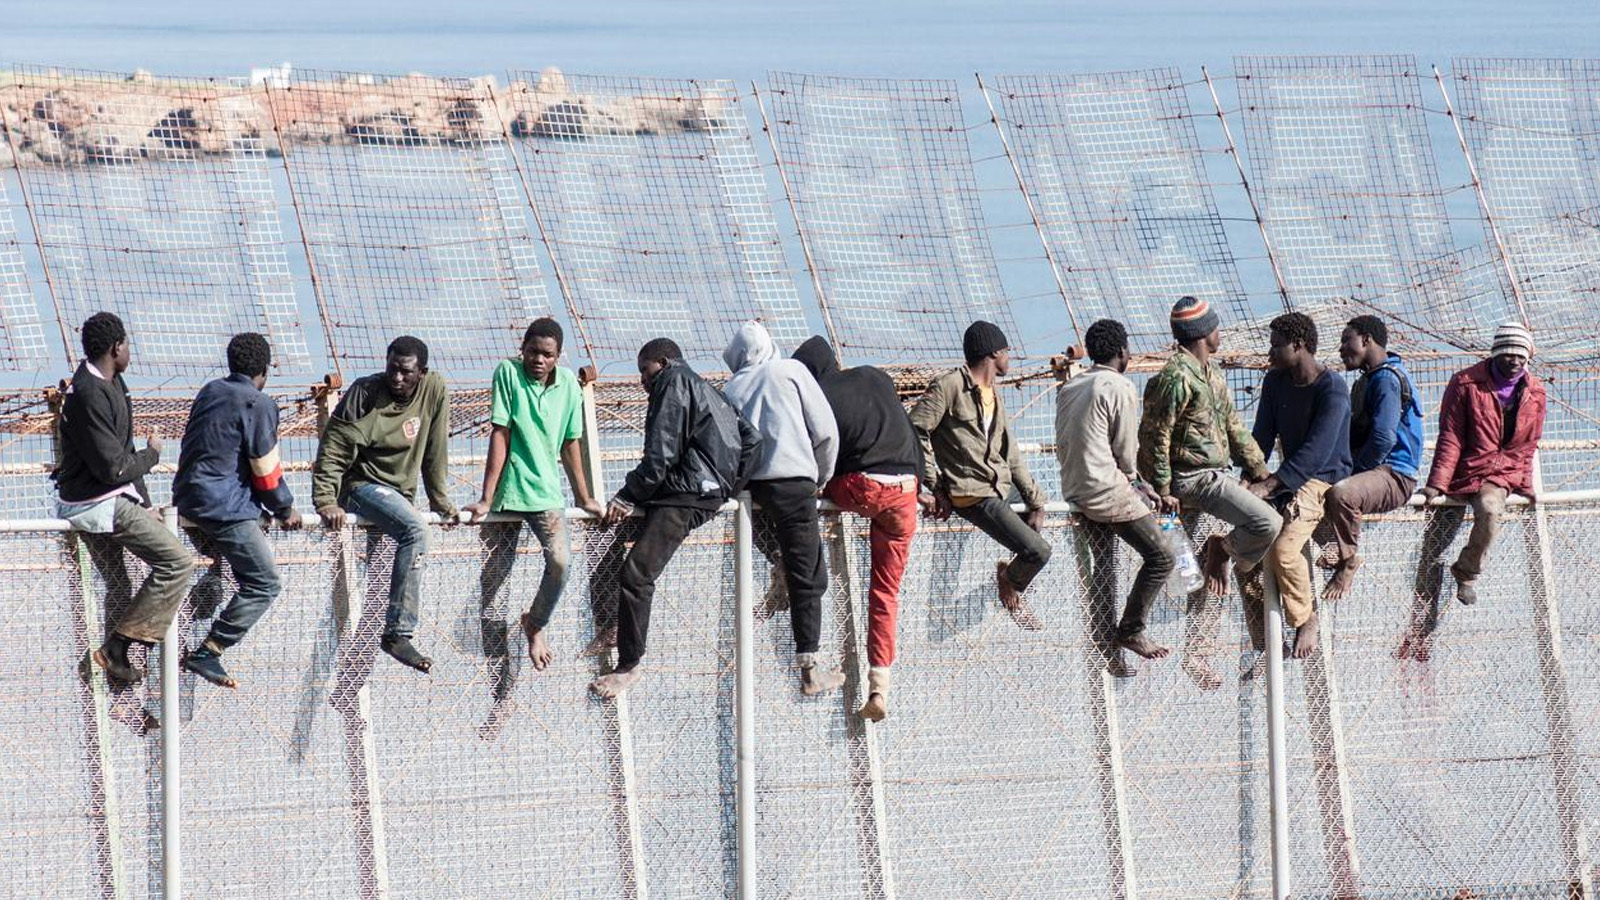 مهاجرون يحاولون اختراق مدينة مليلية في شمال المغرب بطريقة غير شرعية